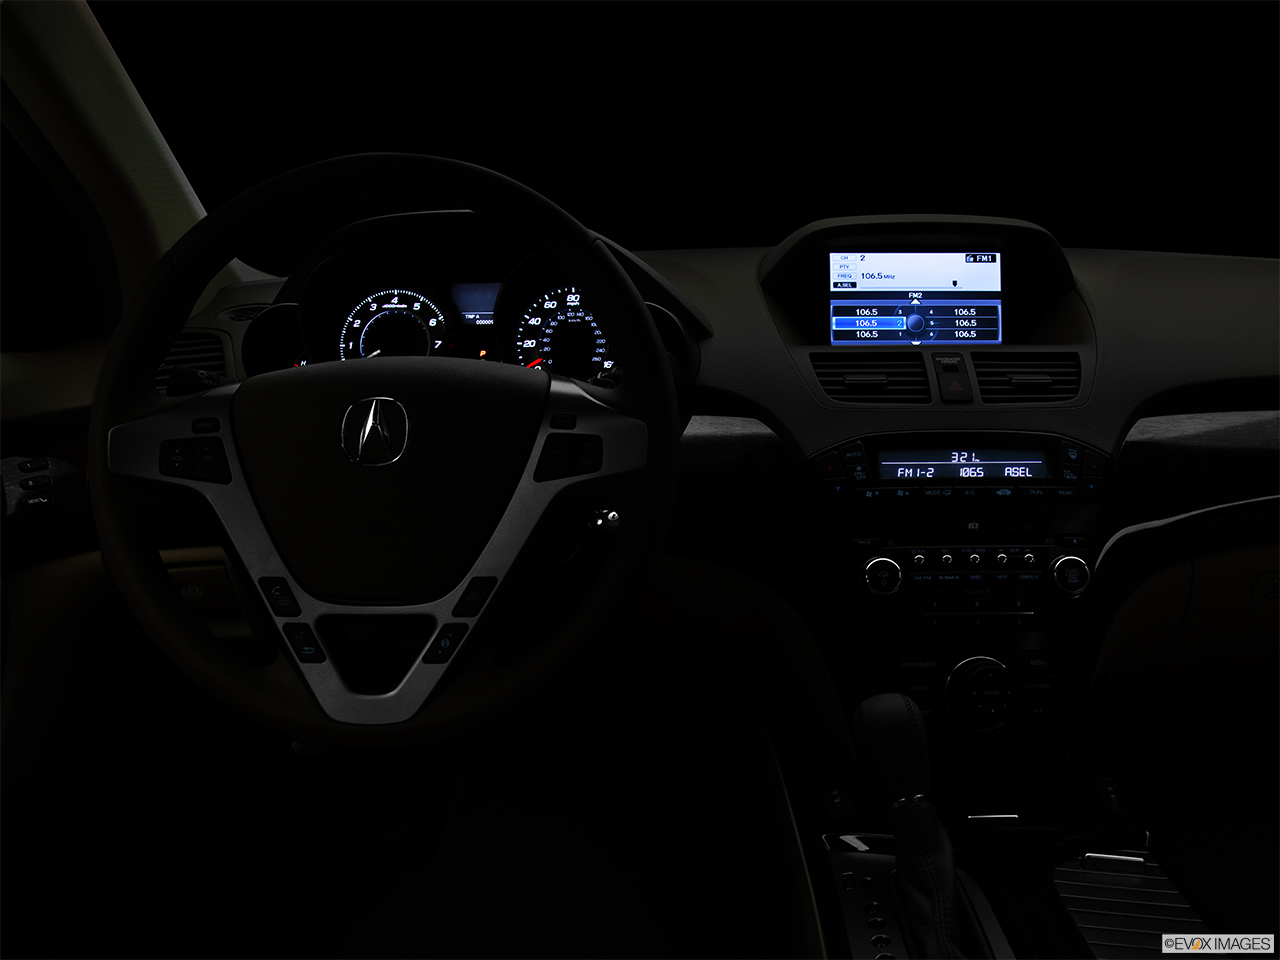 2012 Acura MDX MDX Centered wide dash shot - "night" shot. 